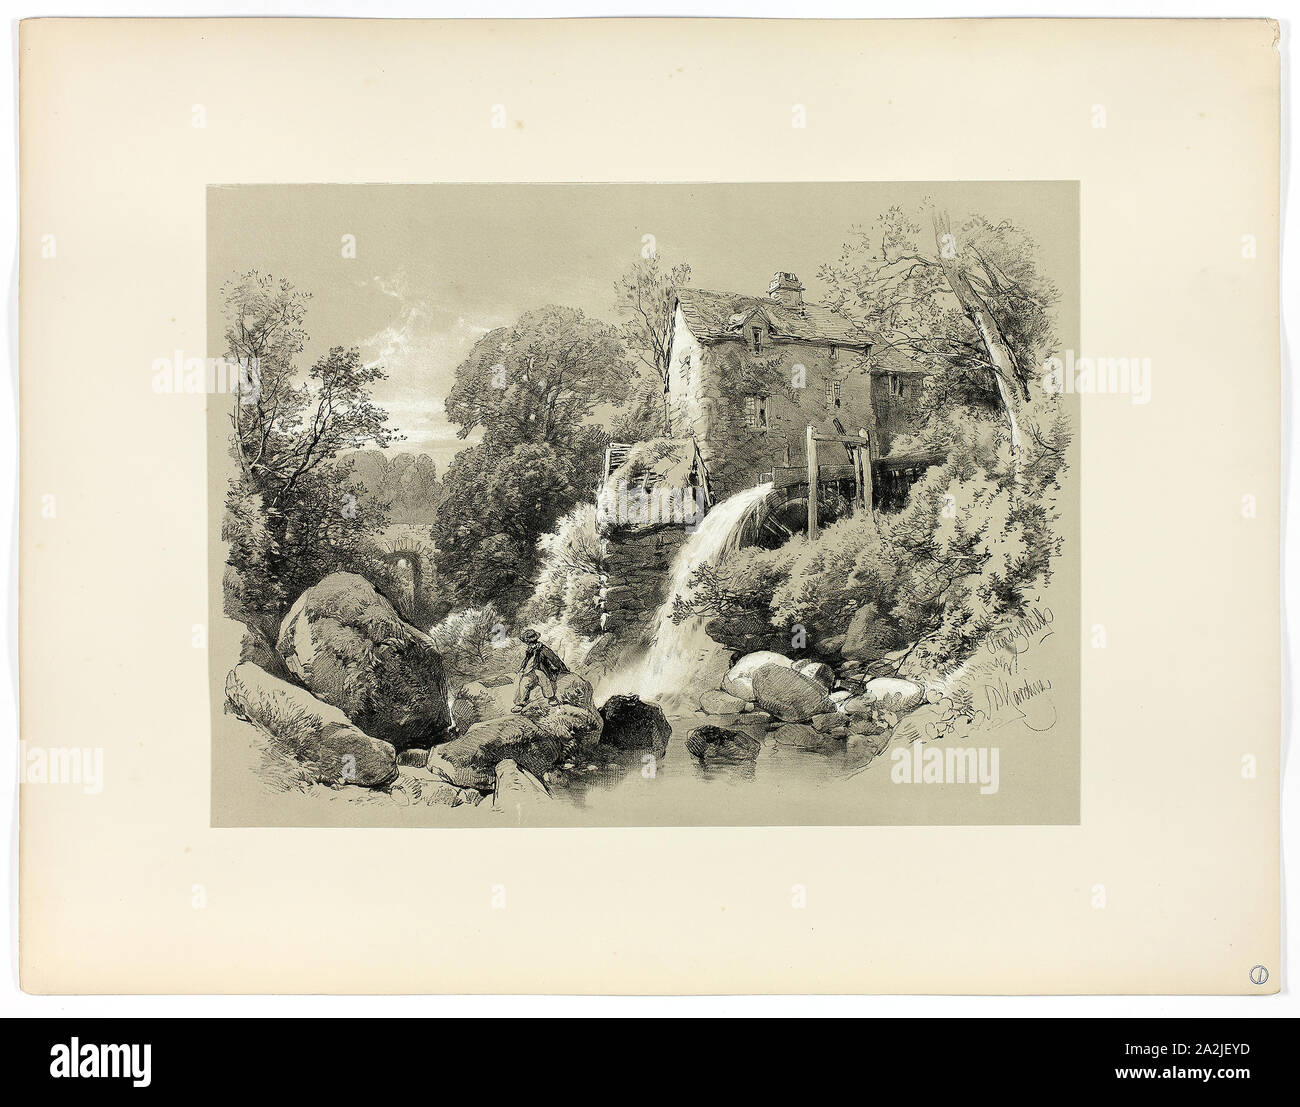 Pandy, Moulin de la ville pittoresque de sélections, c. 1859-60, James Duffield Harding, (Anglais, 1798-1863), publié par W. et Kent Co., Angleterre, Lithographie sur papier, 430 × 560 mm (support secondaire Banque D'Images